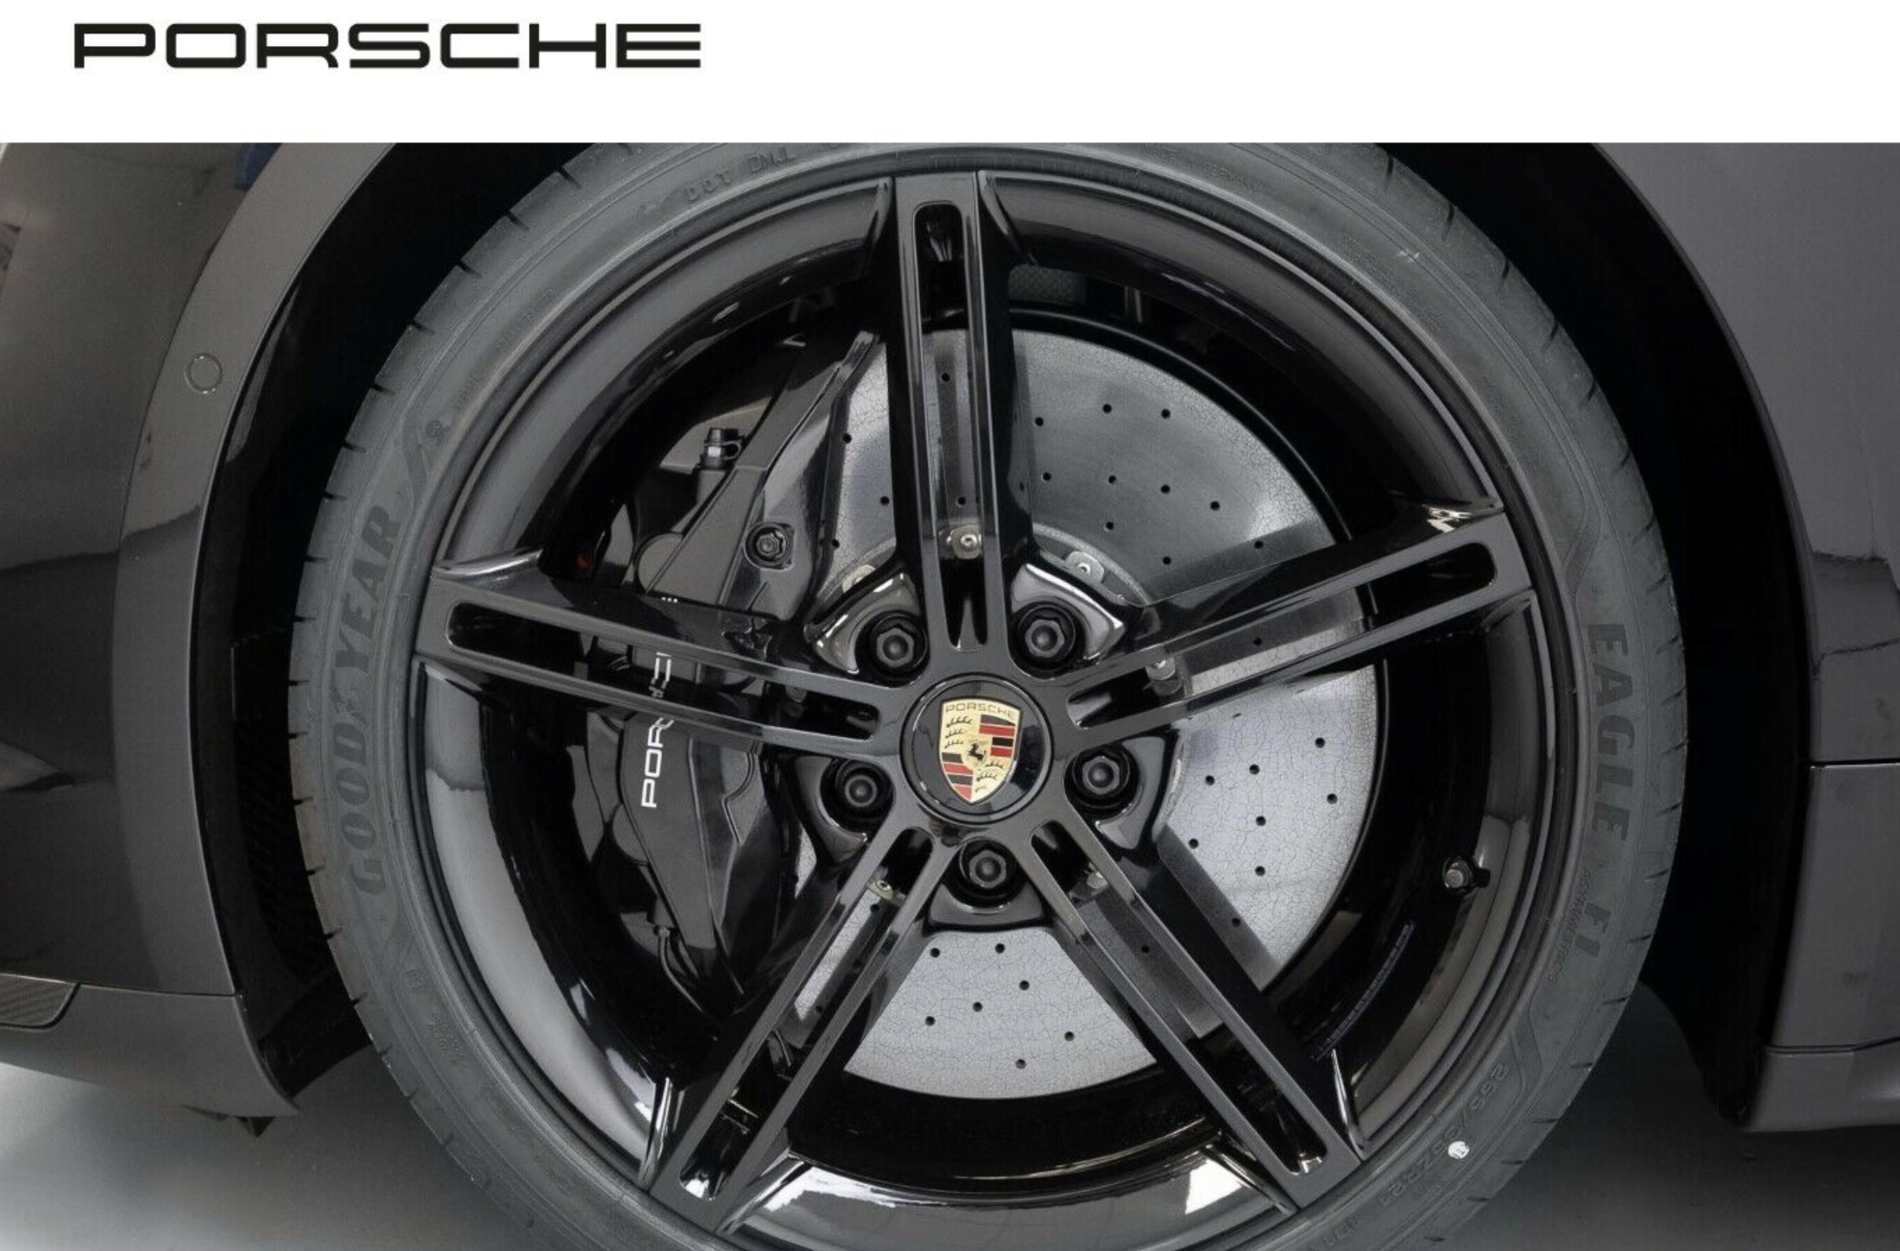 Porsche Taycan 21" Mission E Design rims in black Skærmbillede 2020-11-14 kl. 18.15.29